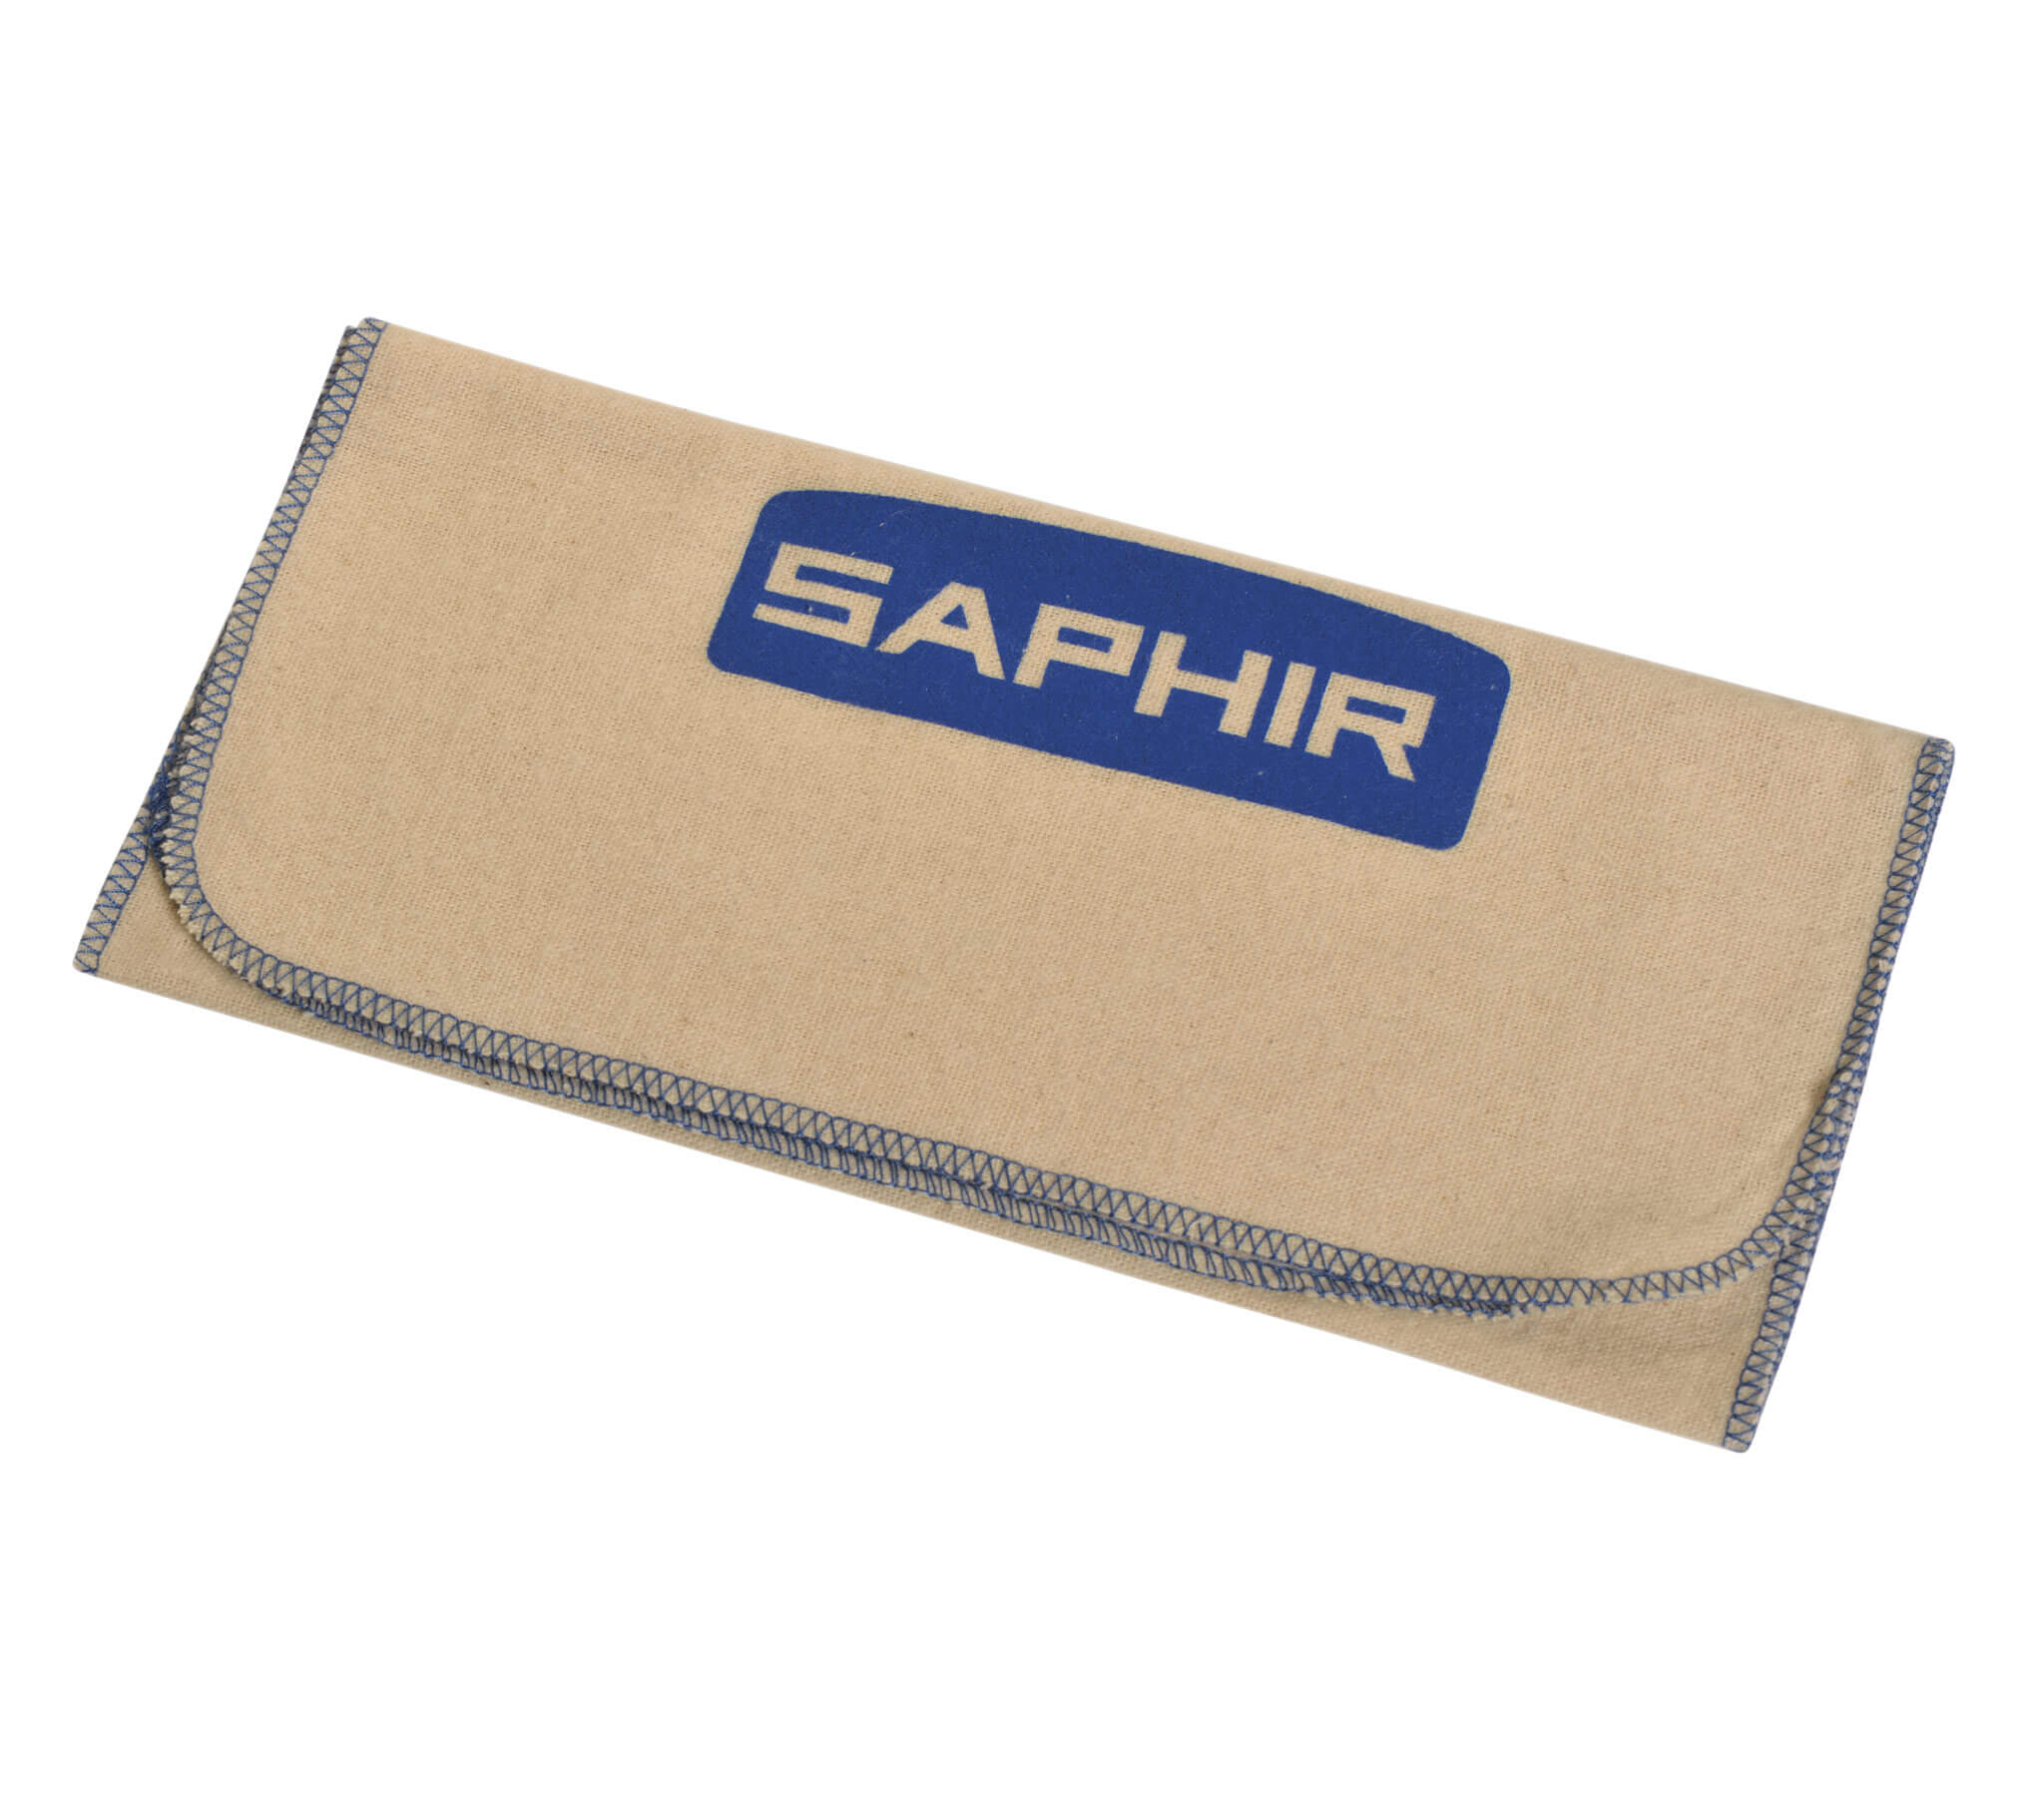 Saphir Beaute du Cuir - Cleaning Cloth